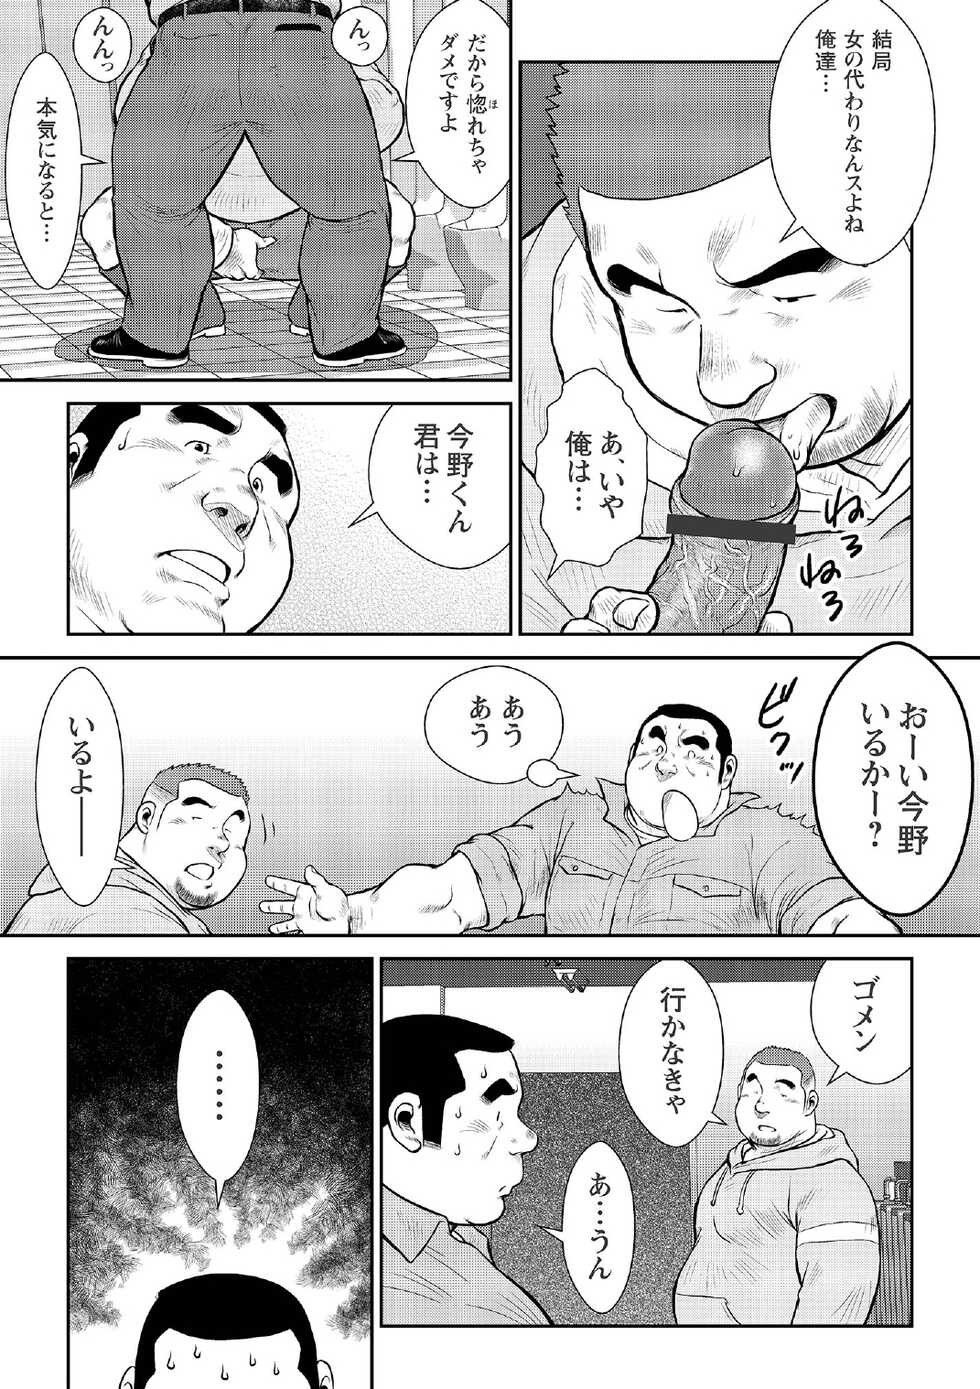 [Ebisubashi Seizou] Ebisubashi Seizou Tanpen Manga Shuu 2 Fuuun! Danshi Ryou [Bunsatsuban] PART 2 Bousou Hantou Taifuu Zensen Ch. 1 + Ch. 2 [Digital] - Page 33